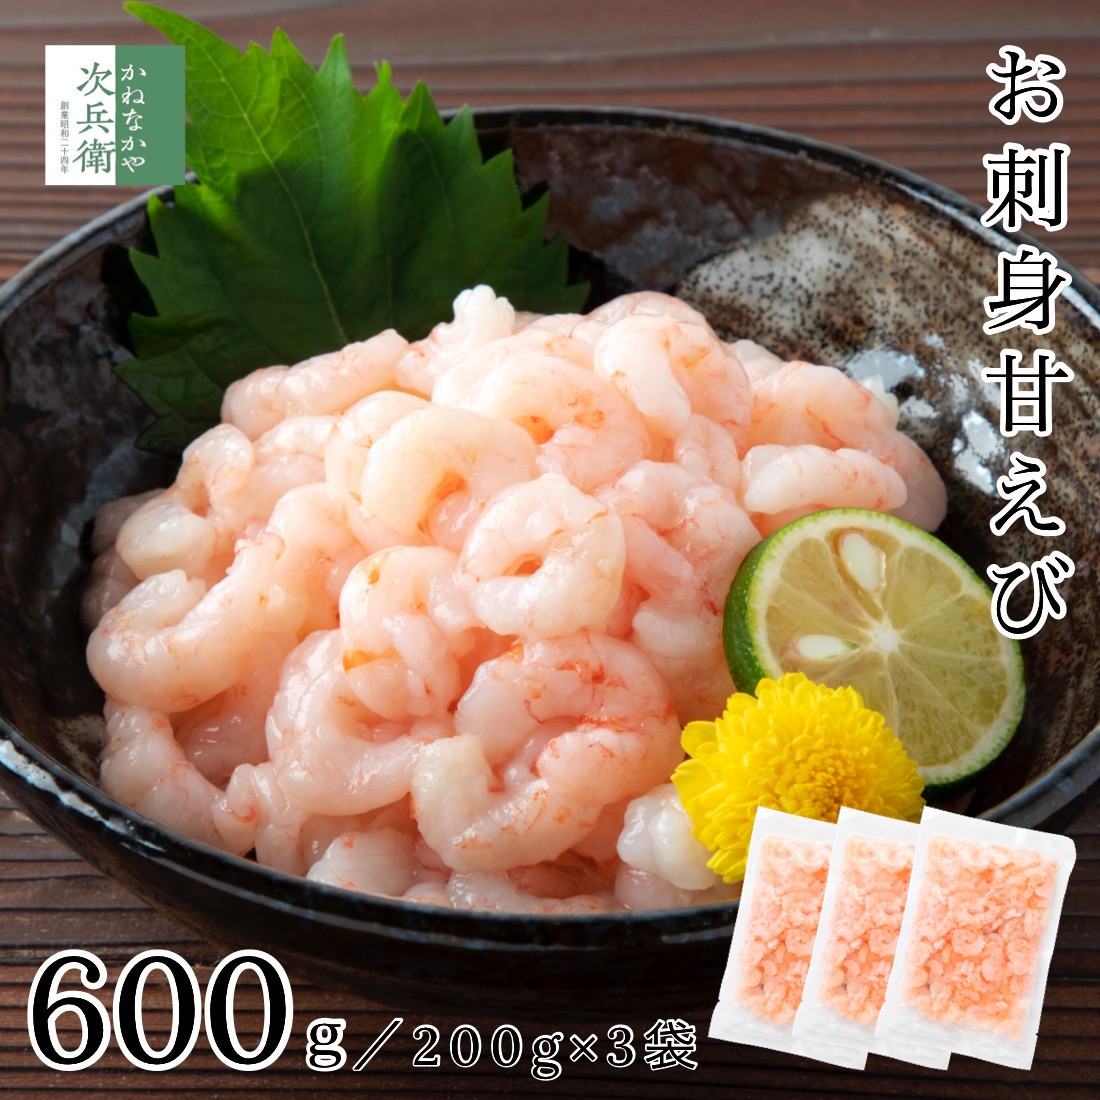 o sashimi ....... нет 200g×3 пакет sashimi ....... северная креветка .. креветка ...... море .. море . море ... морепродукты [C рассылка : рефрижератор ]